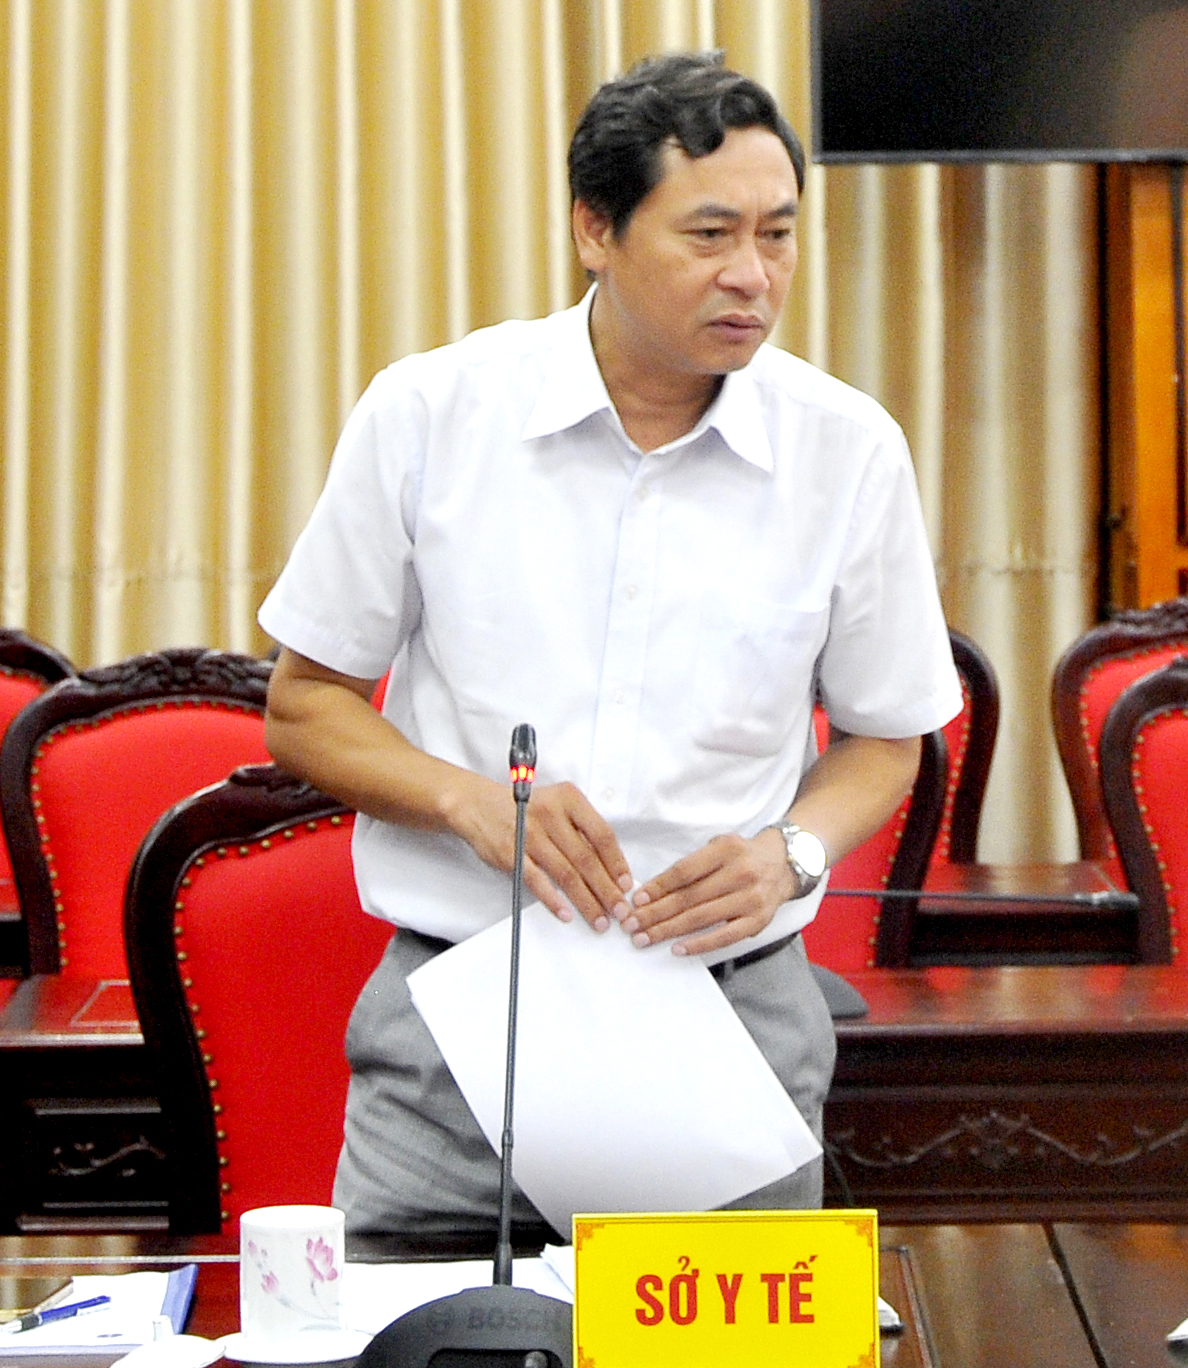 Quyền Giám đốc Sở Y tế Nguyễn Văn Giao đề nghị các ngành liên quan phối hợp, sớm giúp đỡ về các thủ tục liên quan để đảm bảo tiến độ triển khai các dự án do Sở Y tế làm chủ đầu tư.
